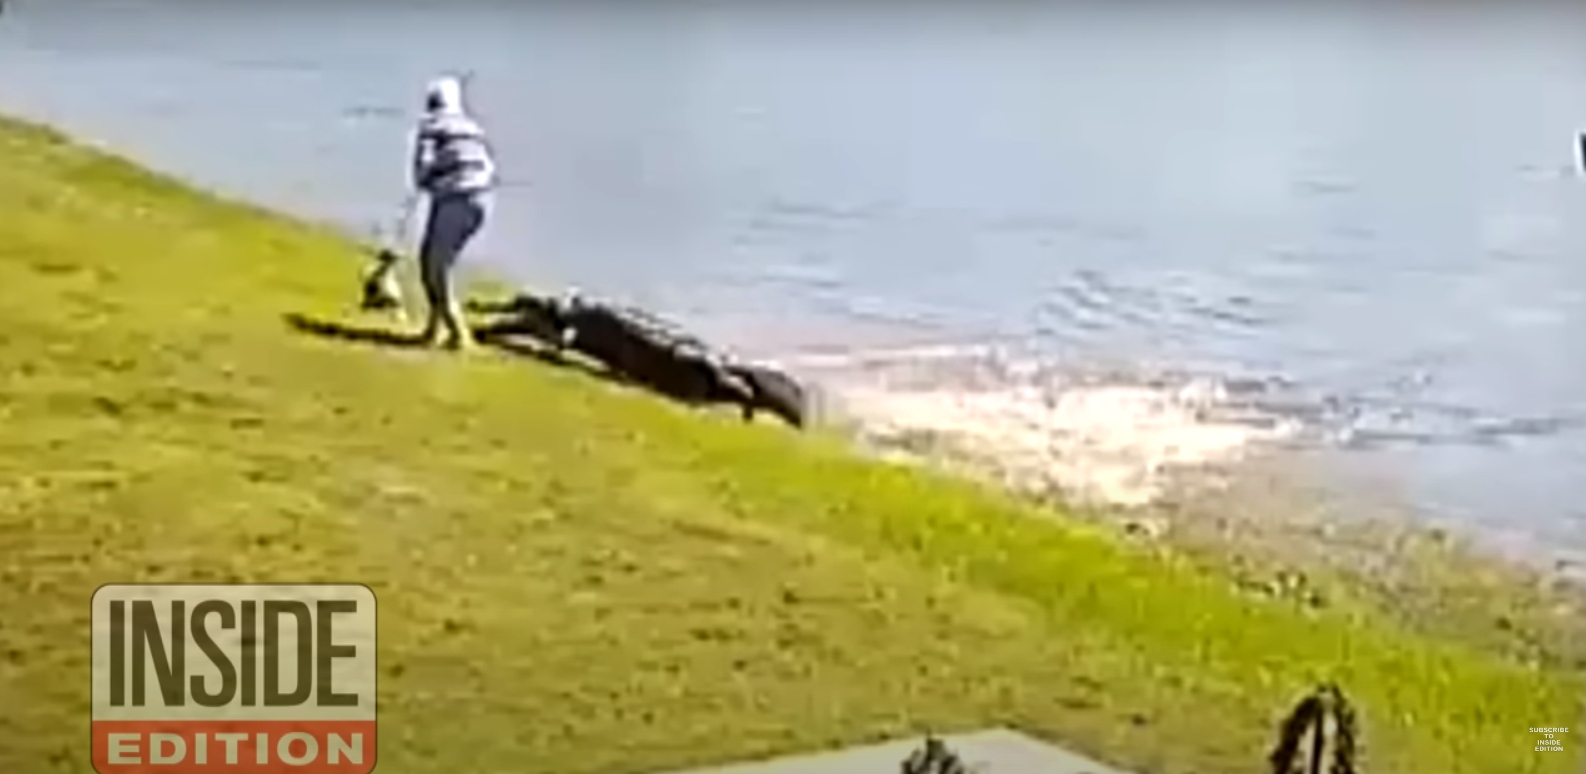 ΗΠΑ: Οι σοκαριστικές εικόνες από την φονική επίθεση αλιγάτορα σε 85χρονη και το σκυλάκι της